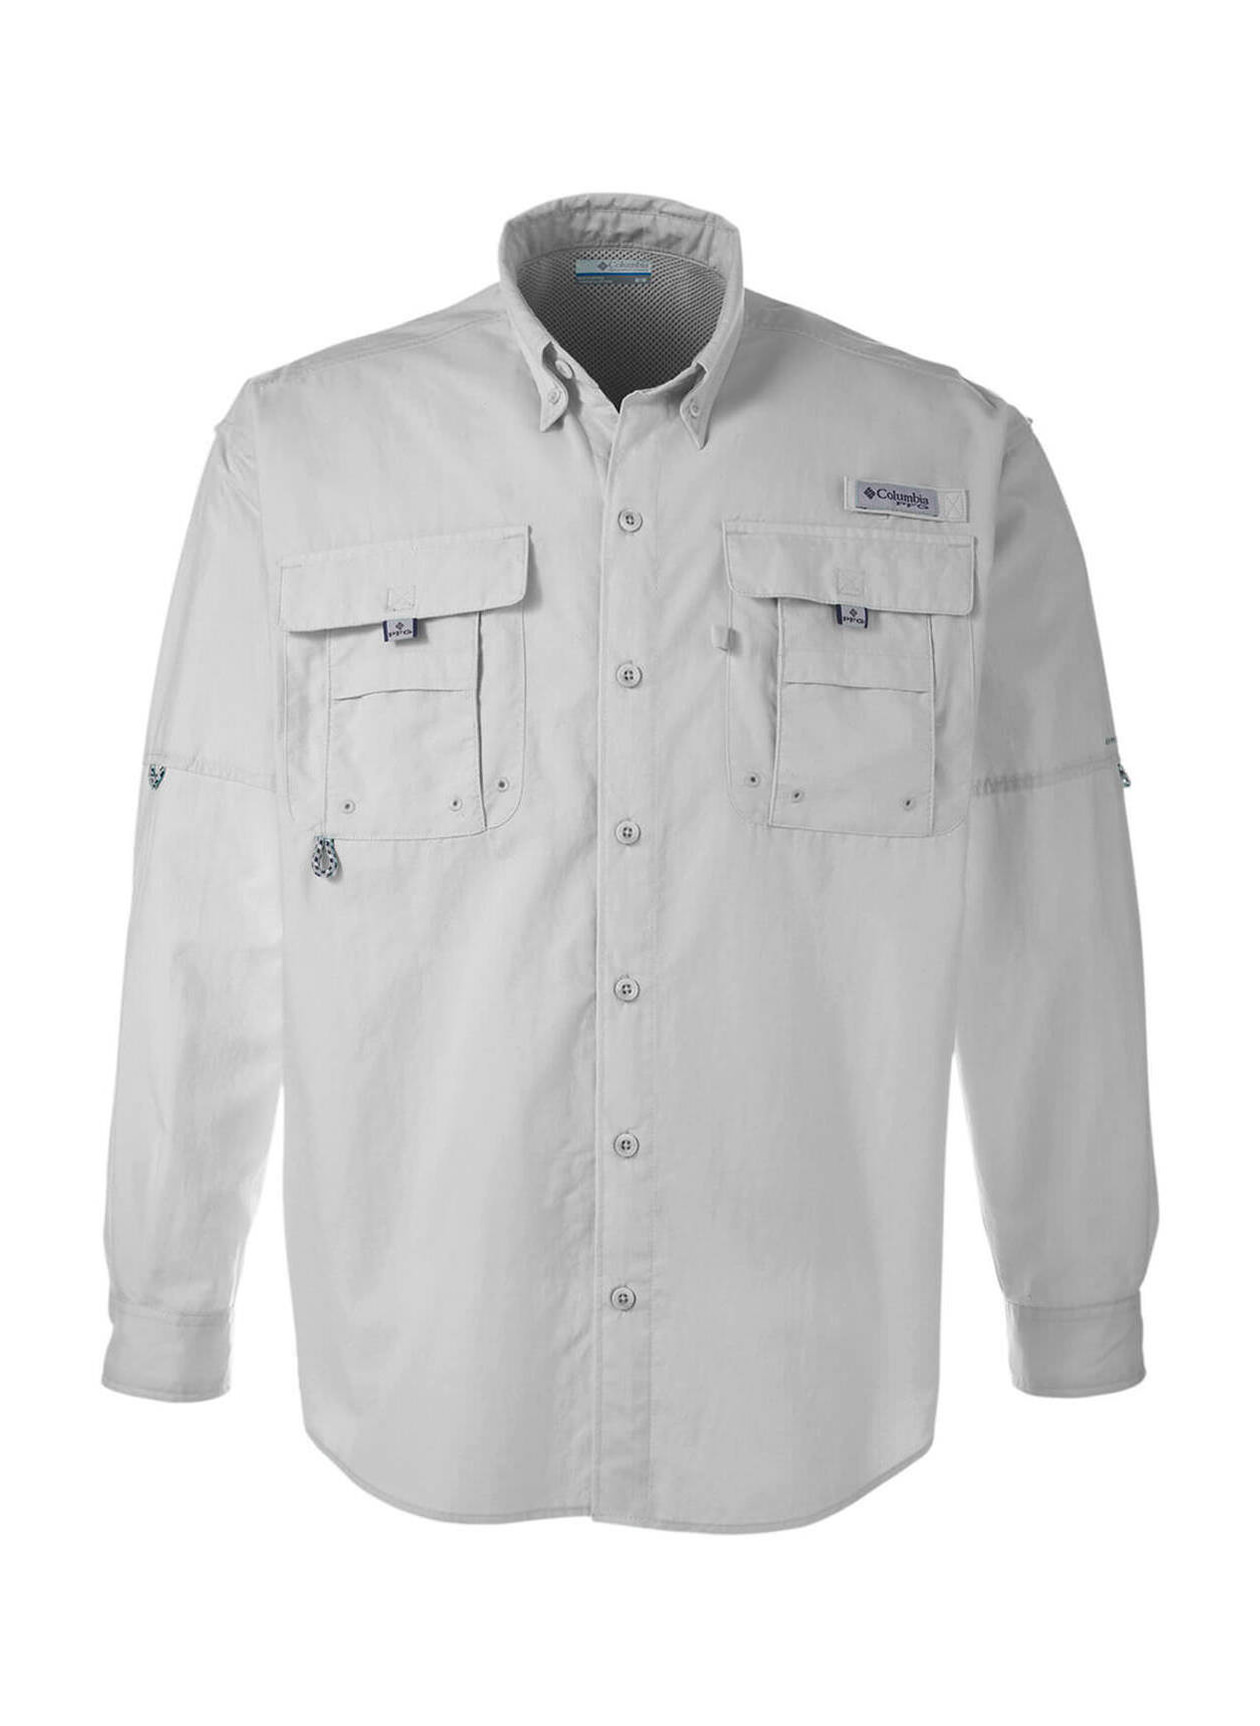 Columbia PFG Bahama™ II Long Sleeve Shirt: Grey